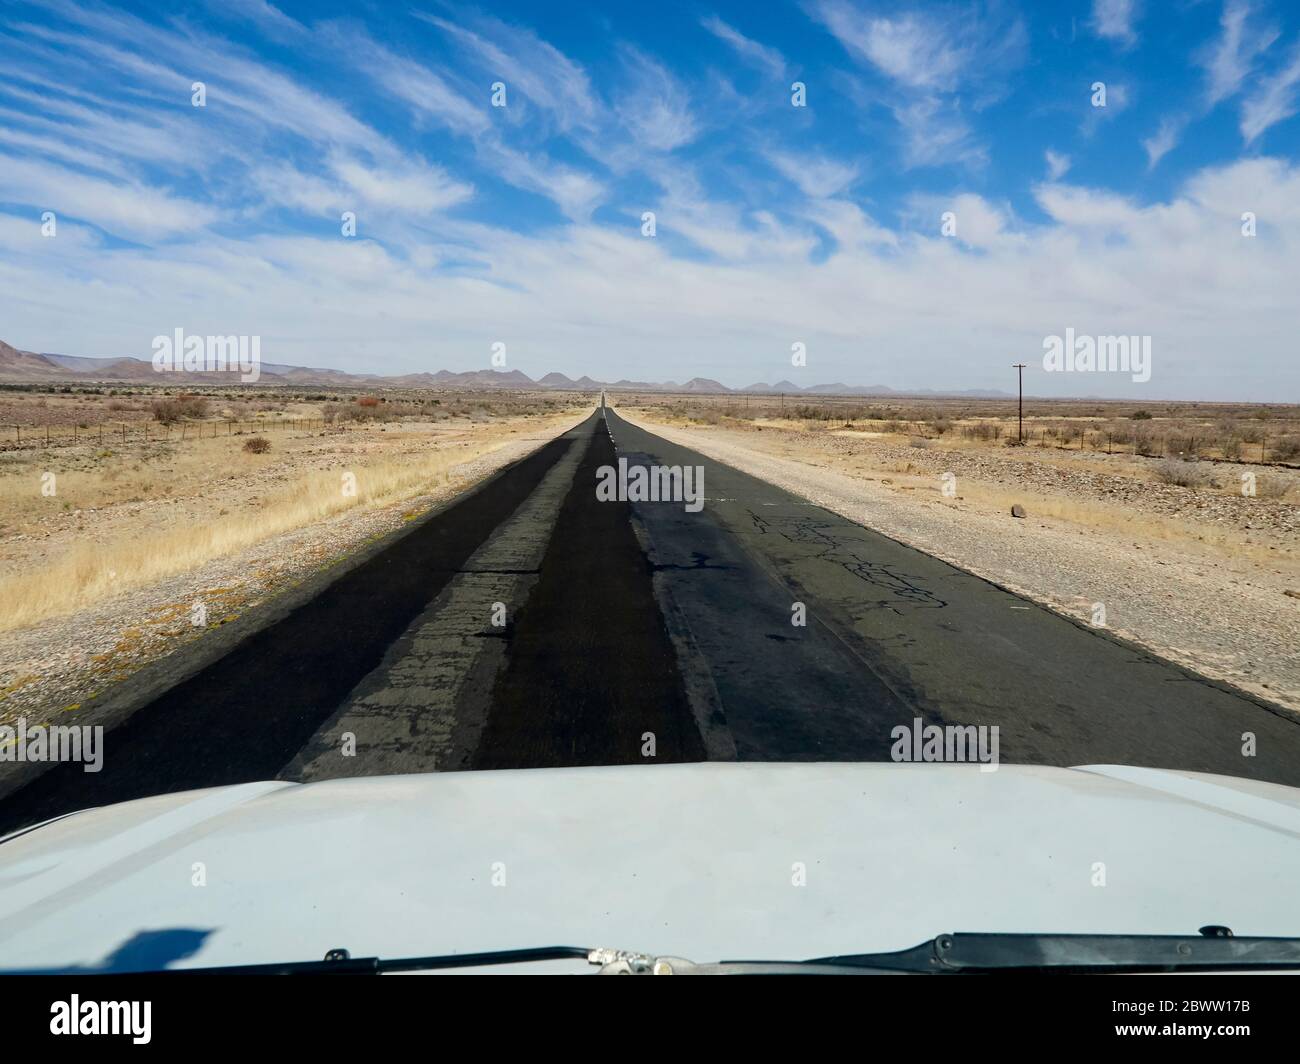 Vehículo todoterreno en una carretera asfaltada, Sudáfrica, Sudáfrica Foto de stock